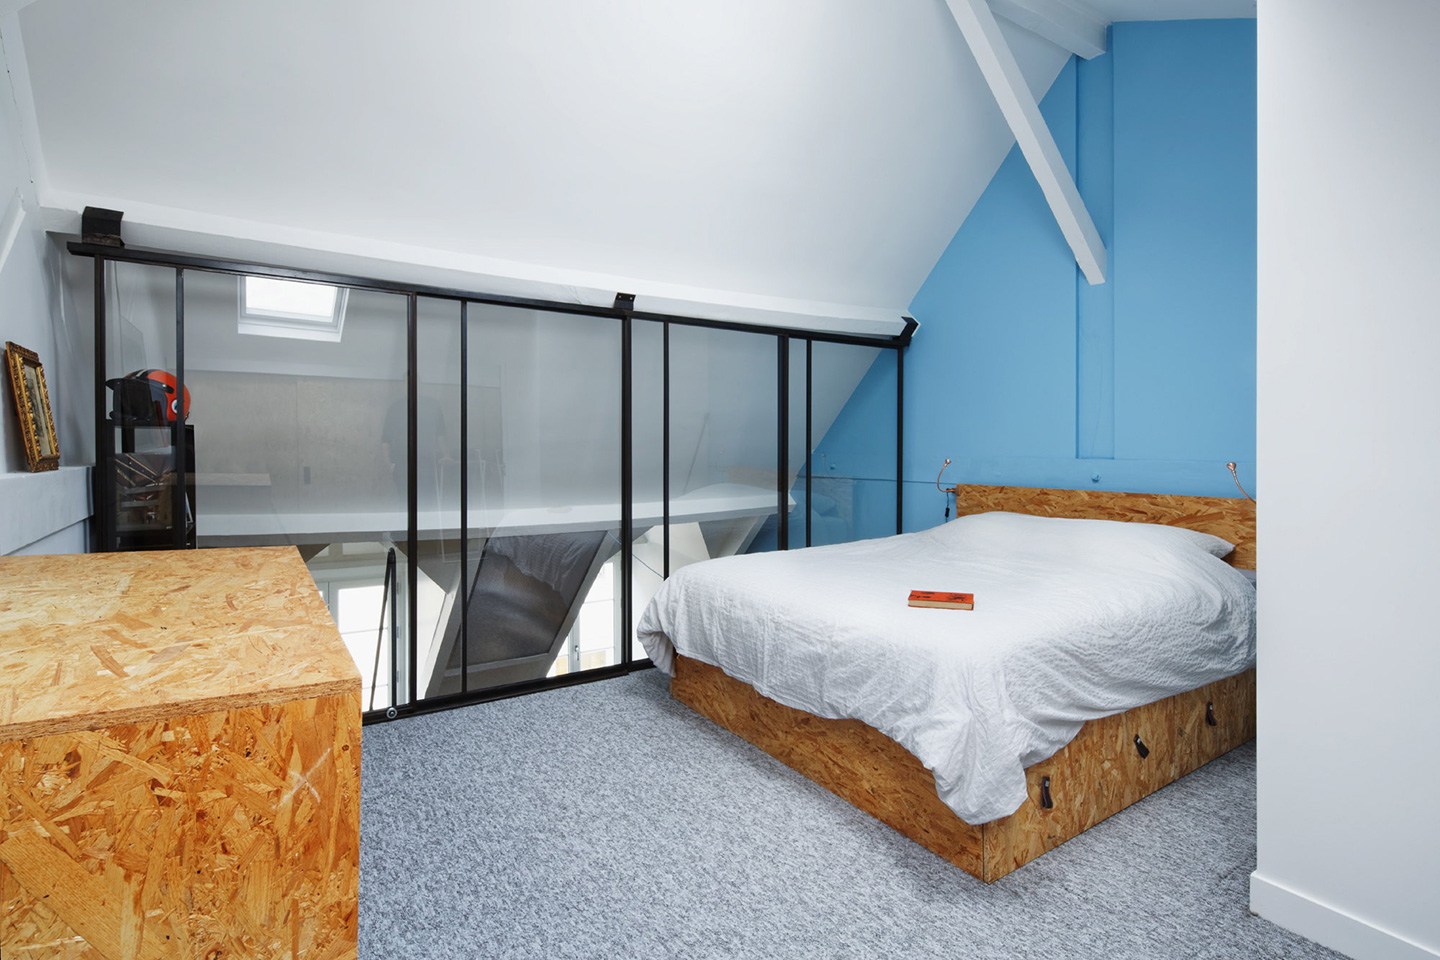 Квартира на последнем этаже в Париже – проект Florent Chagny Architecture